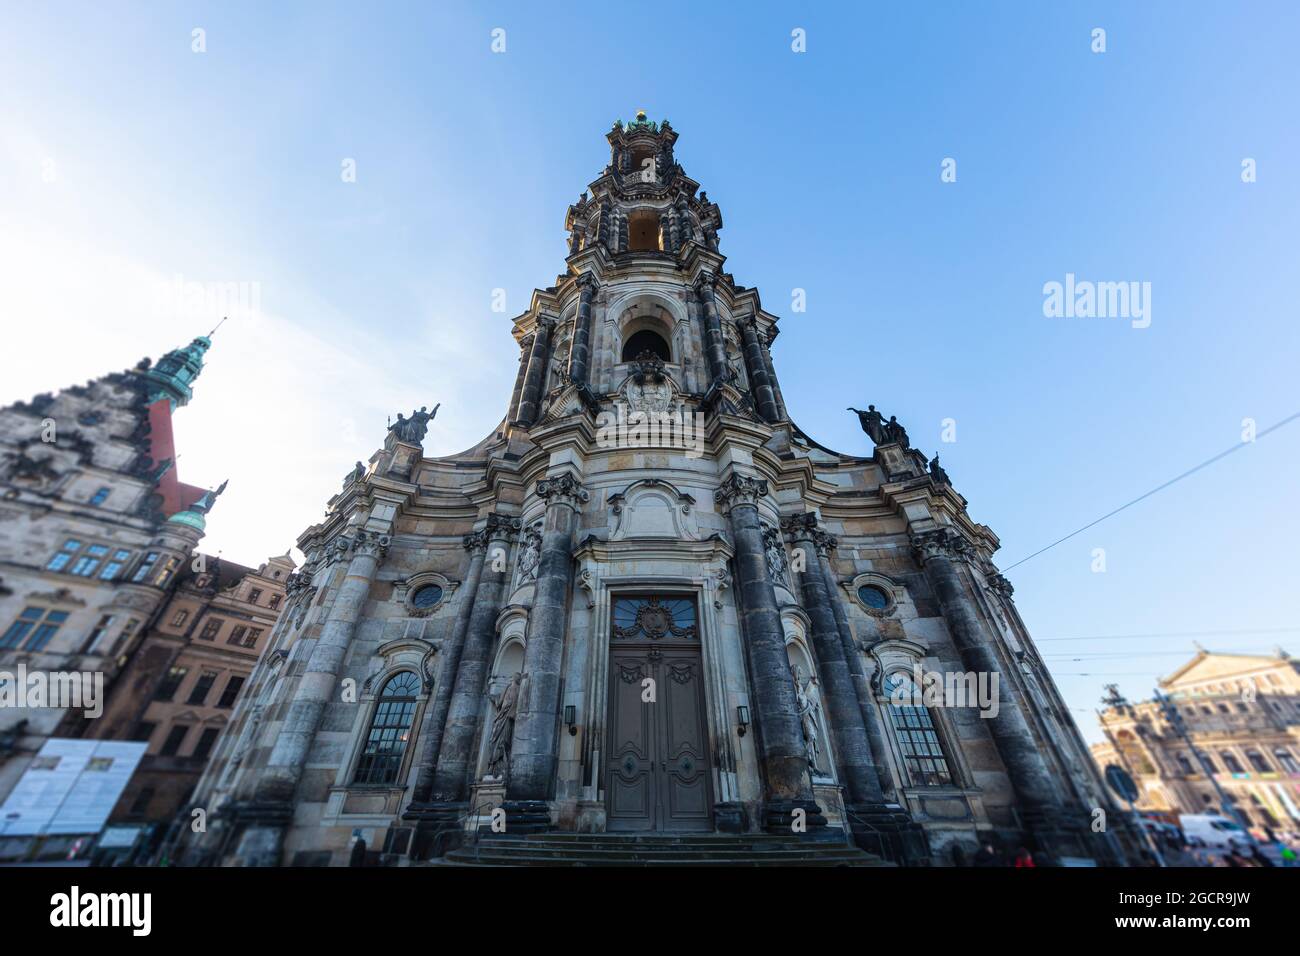 Stadtbild der Stadt Dresden, Deutschland, die Katholische Hofkirche, die Zentralkirche in der Altstadt von Dresden. Historische barocke katholische Plac Stockfoto